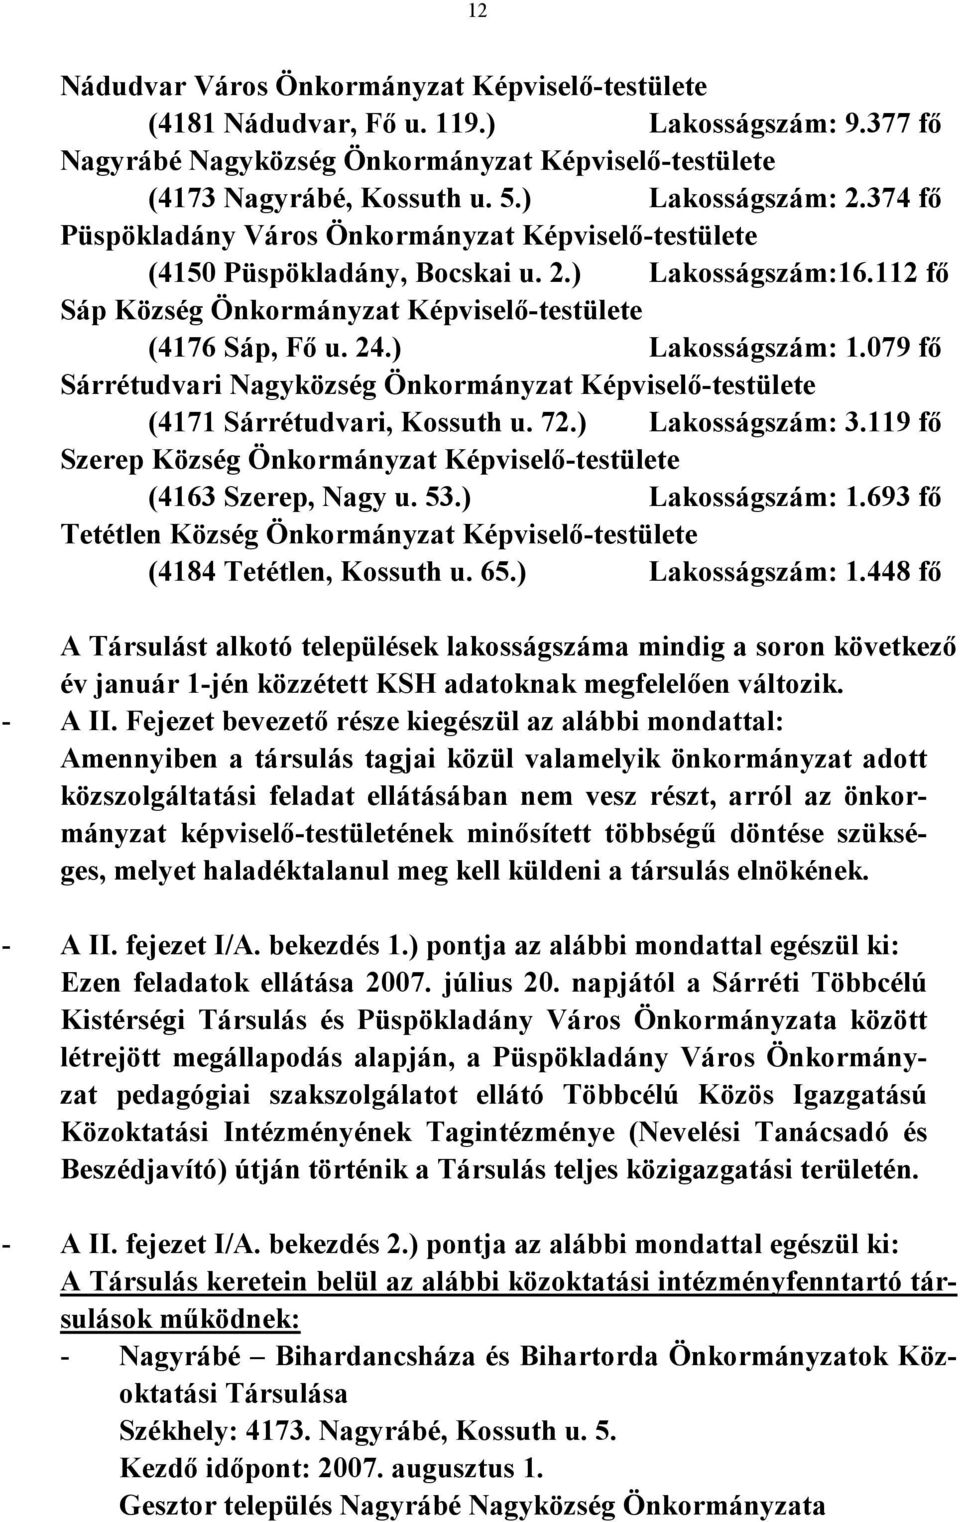 ) Lakosságszám: 1.079 fő Sárrétudvari Nagyközség Önkormányzat Képviselő-testülete (4171 Sárrétudvari, Kossuth u. 72.) Lakosságszám: 3.